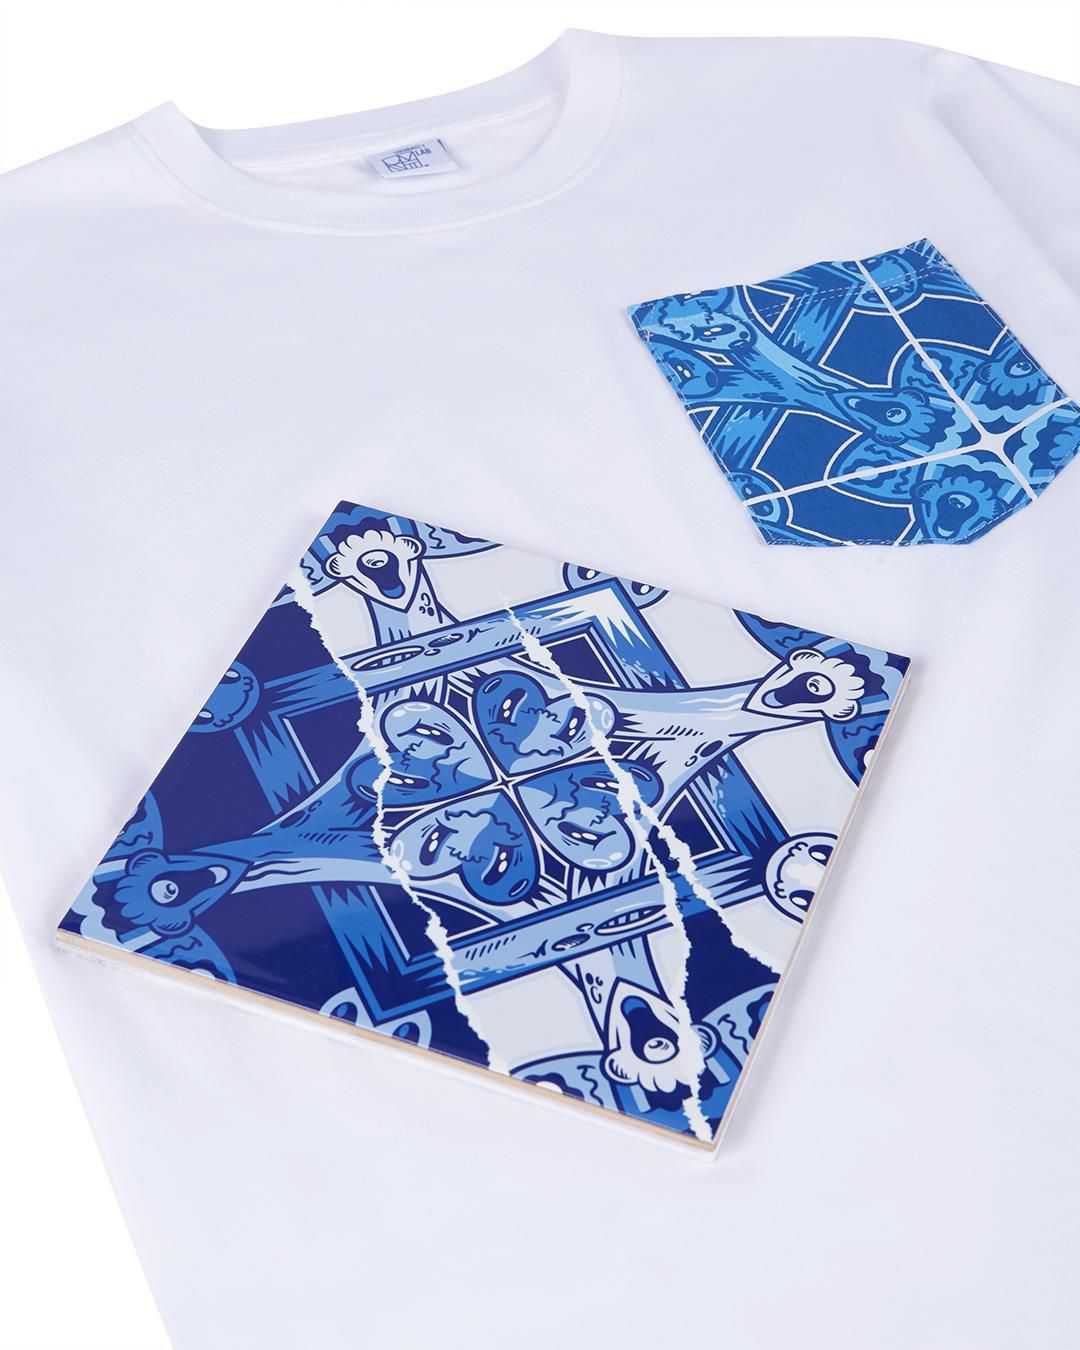 T-Shirt + Tile Pack